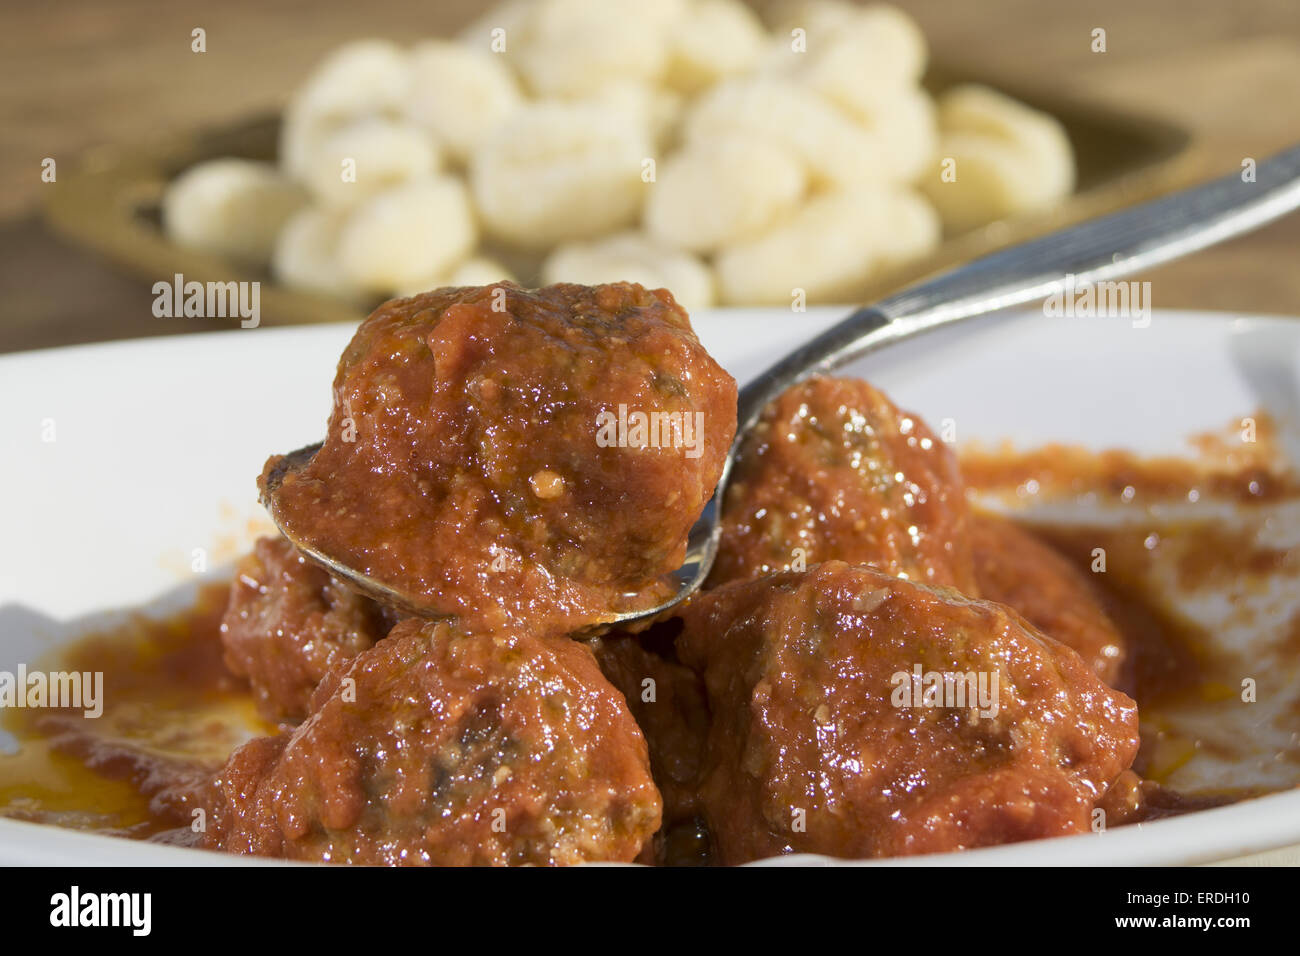 tasty Italian recipe: meatballs in tomato sauce Stock Photo